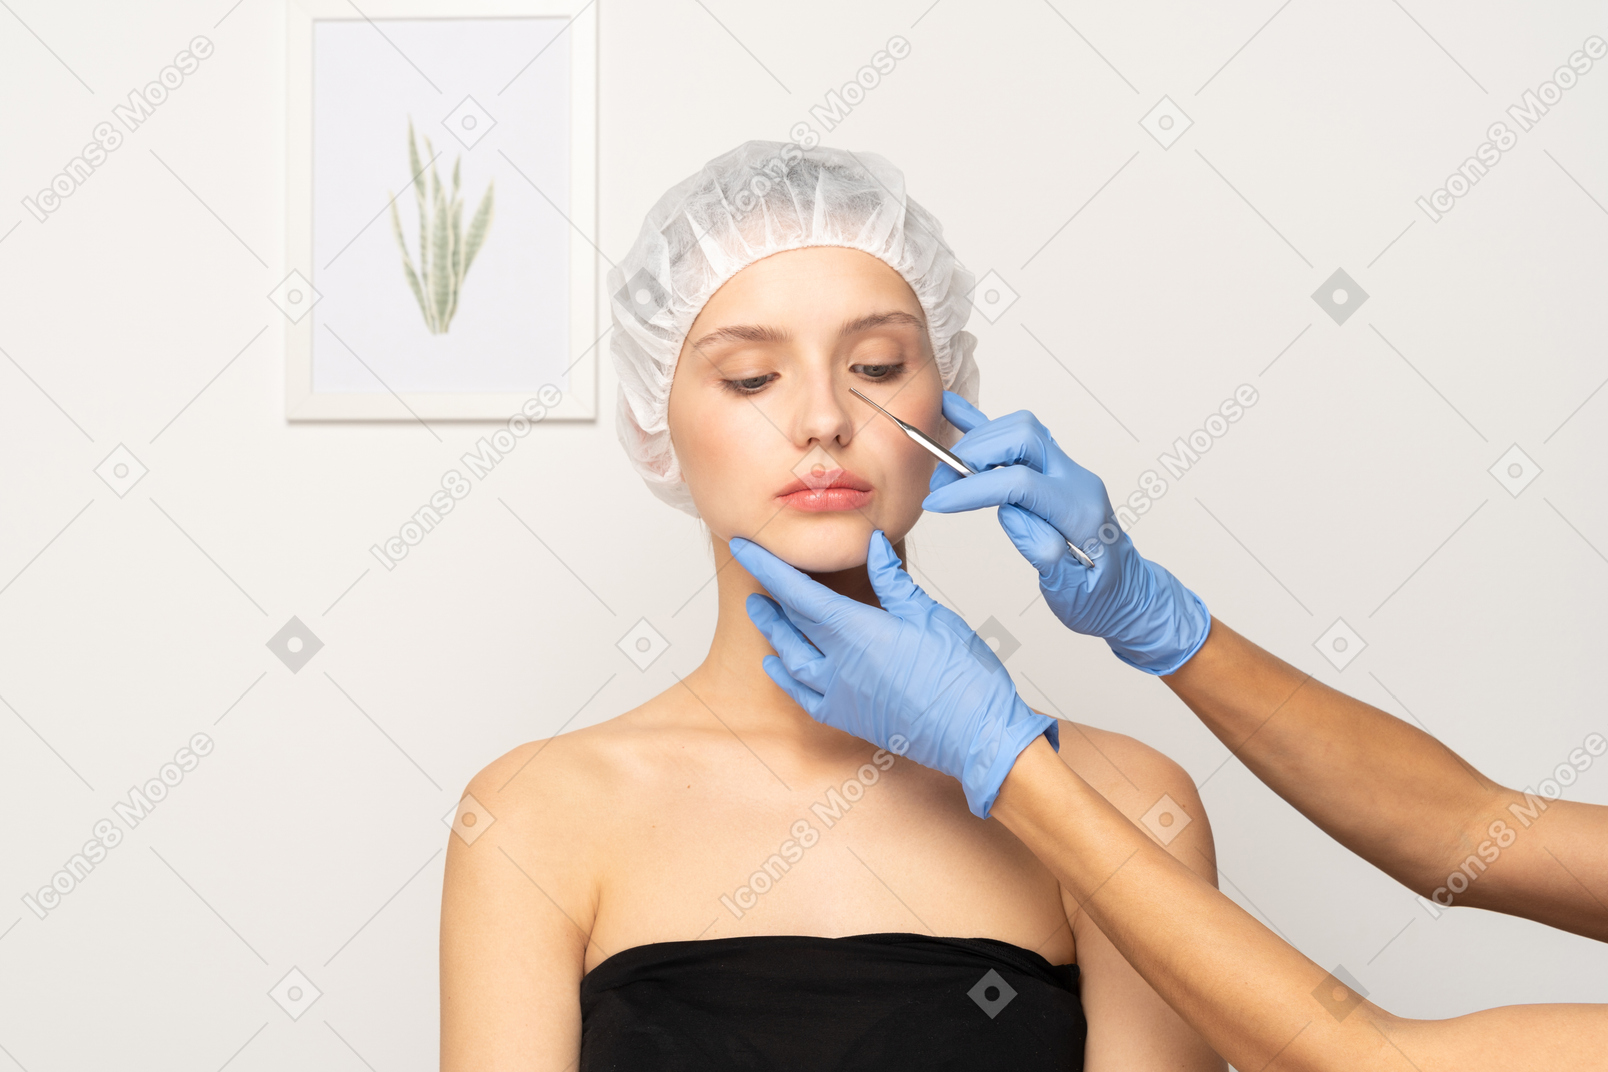 Пластический хирург держит скальпель возле лица молодой женщины